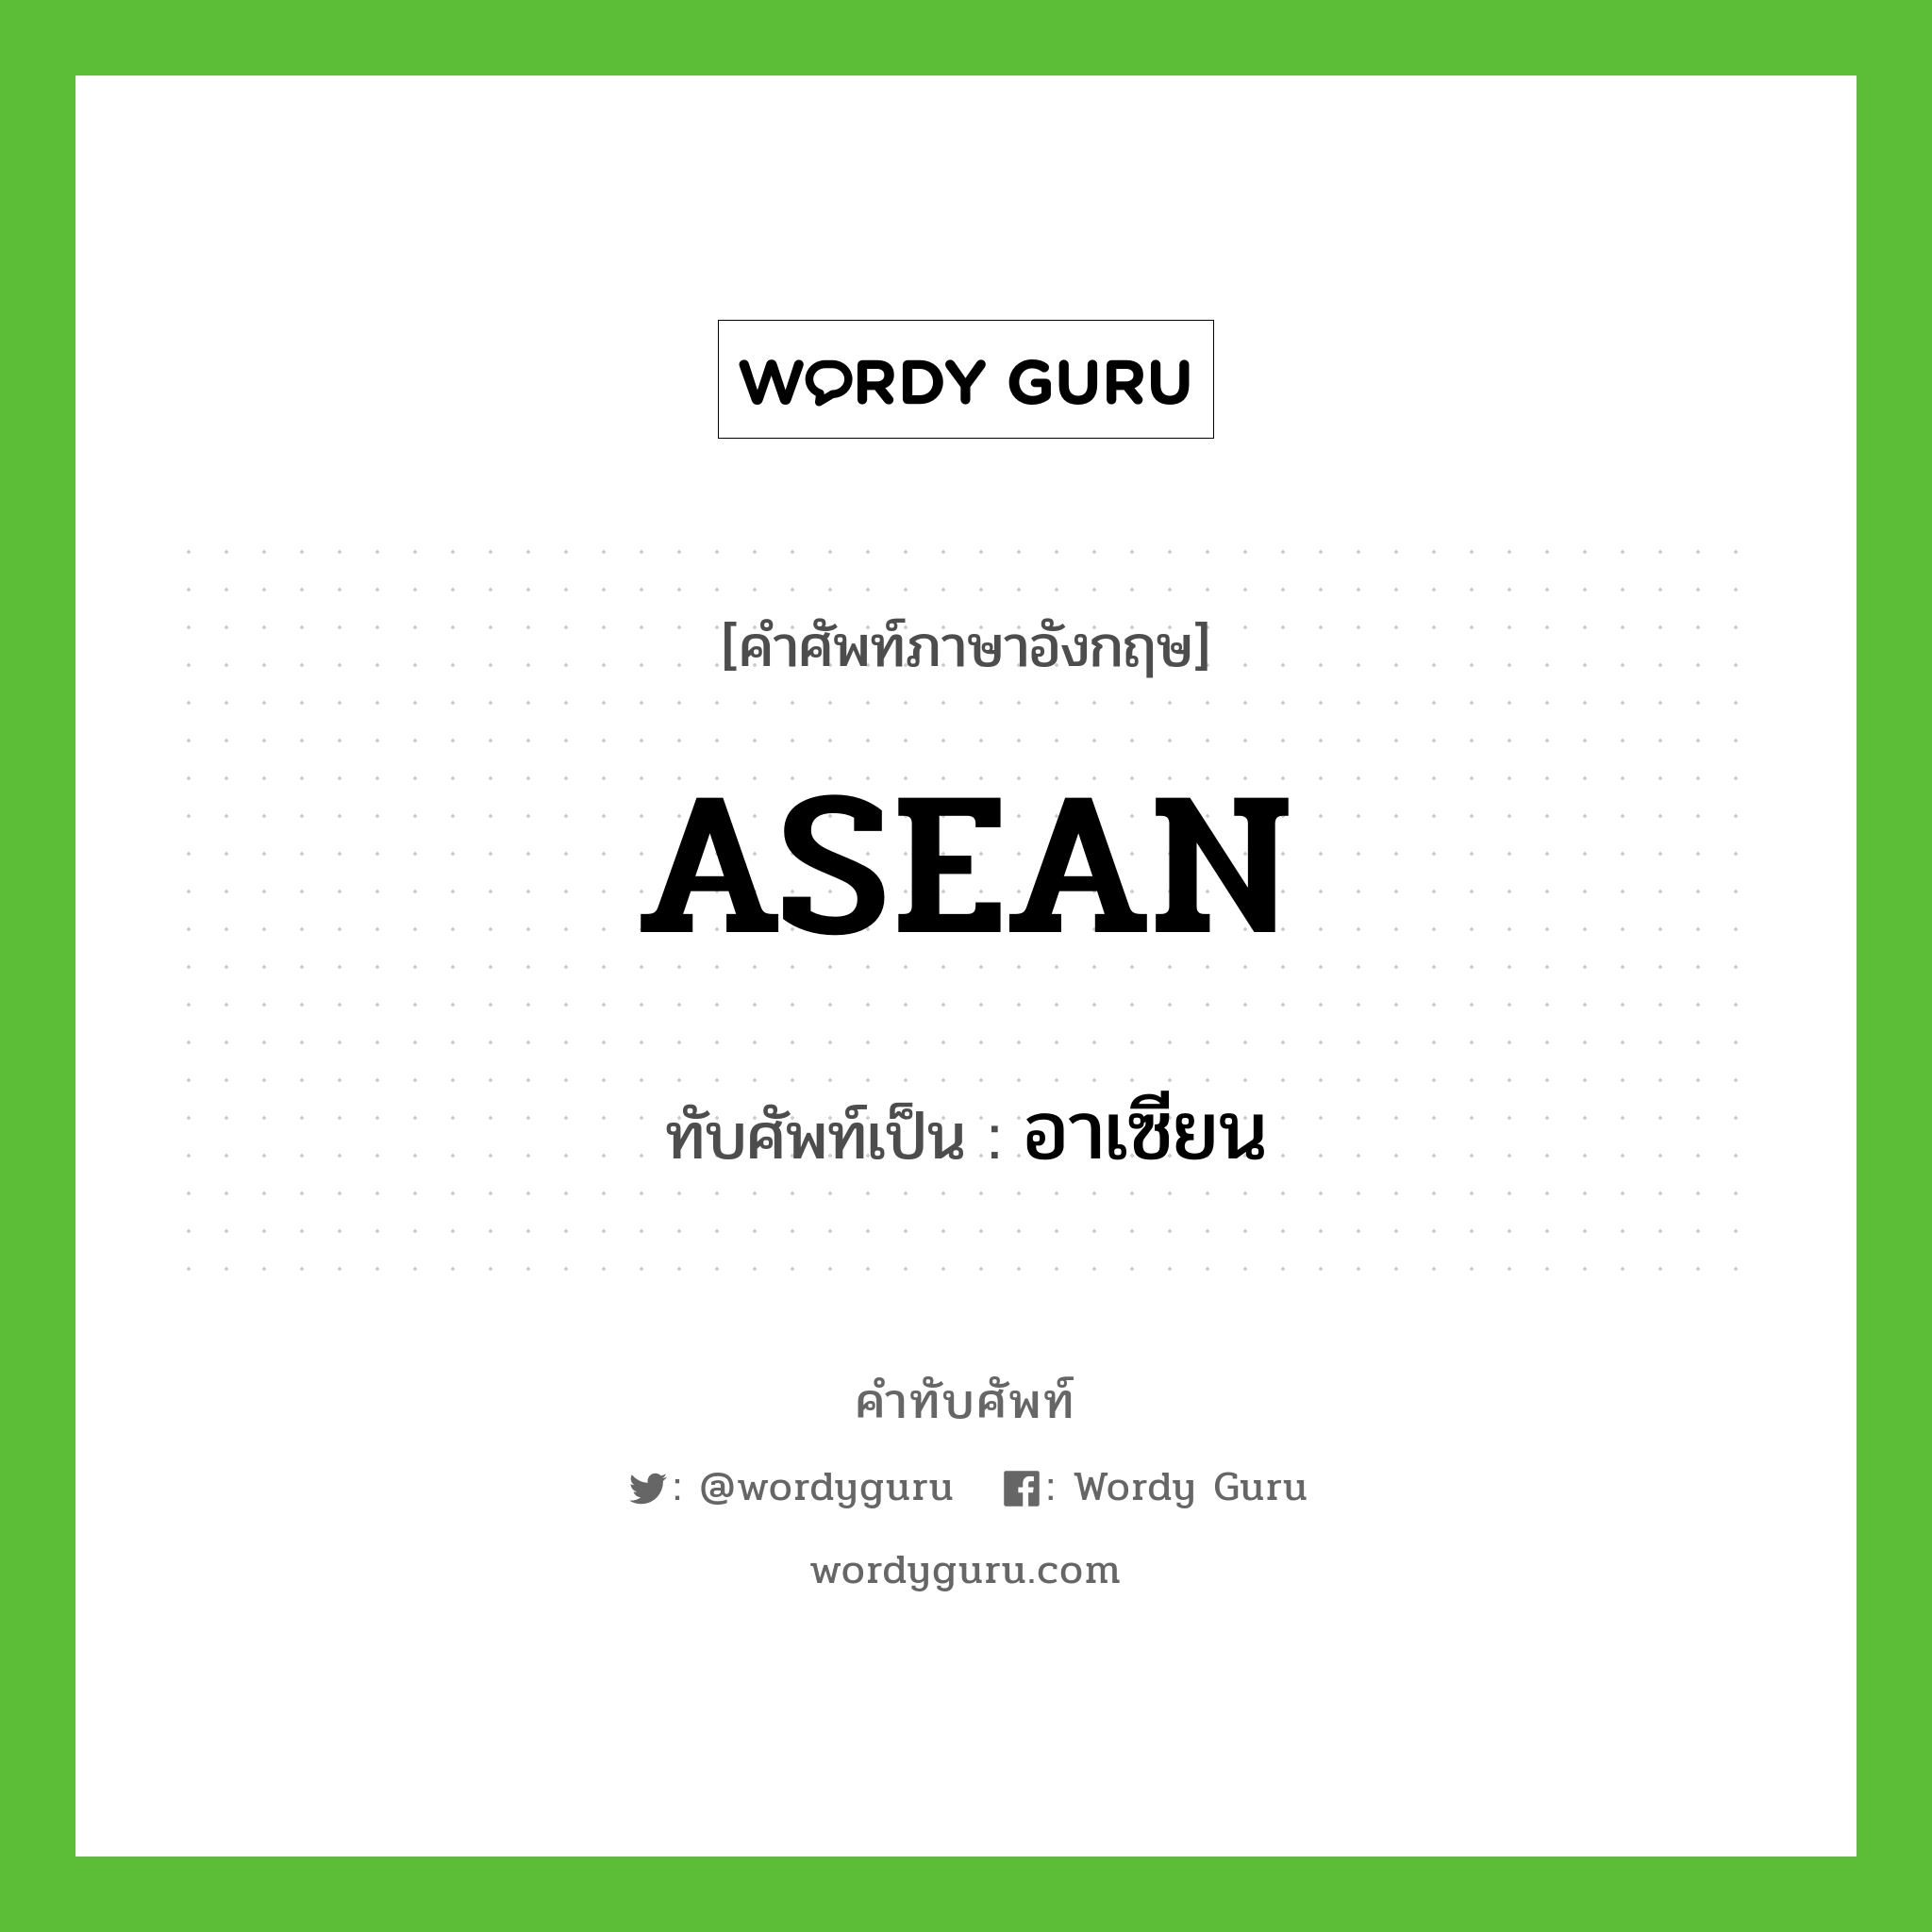 อาเซียน เขียนอย่างไร?, คำศัพท์ภาษาอังกฤษ อาเซียน ทับศัพท์เป็น ASEAN